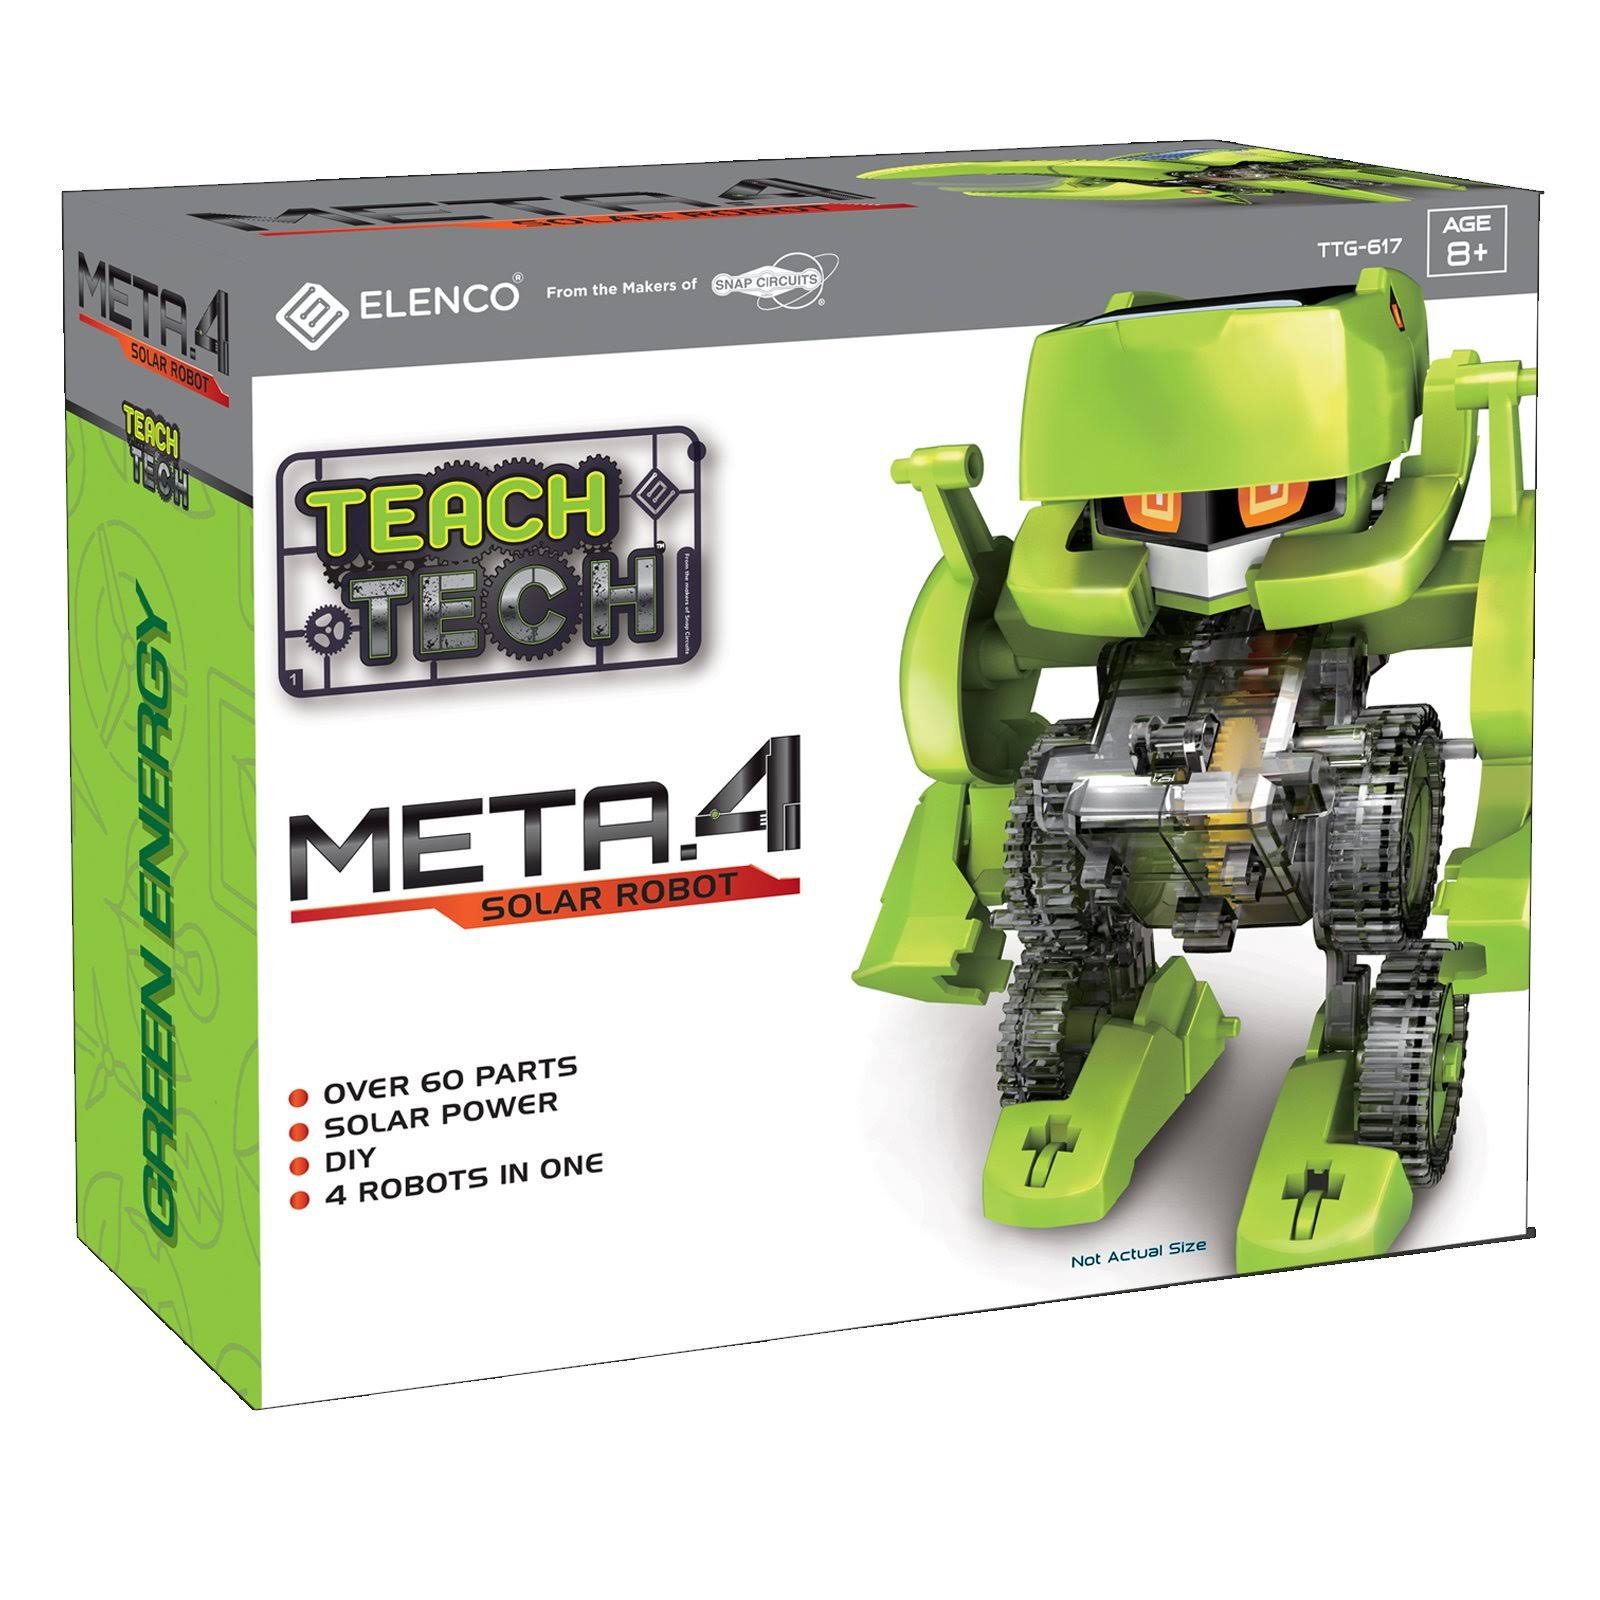 Teach Tech Meta.4 Solar Robot